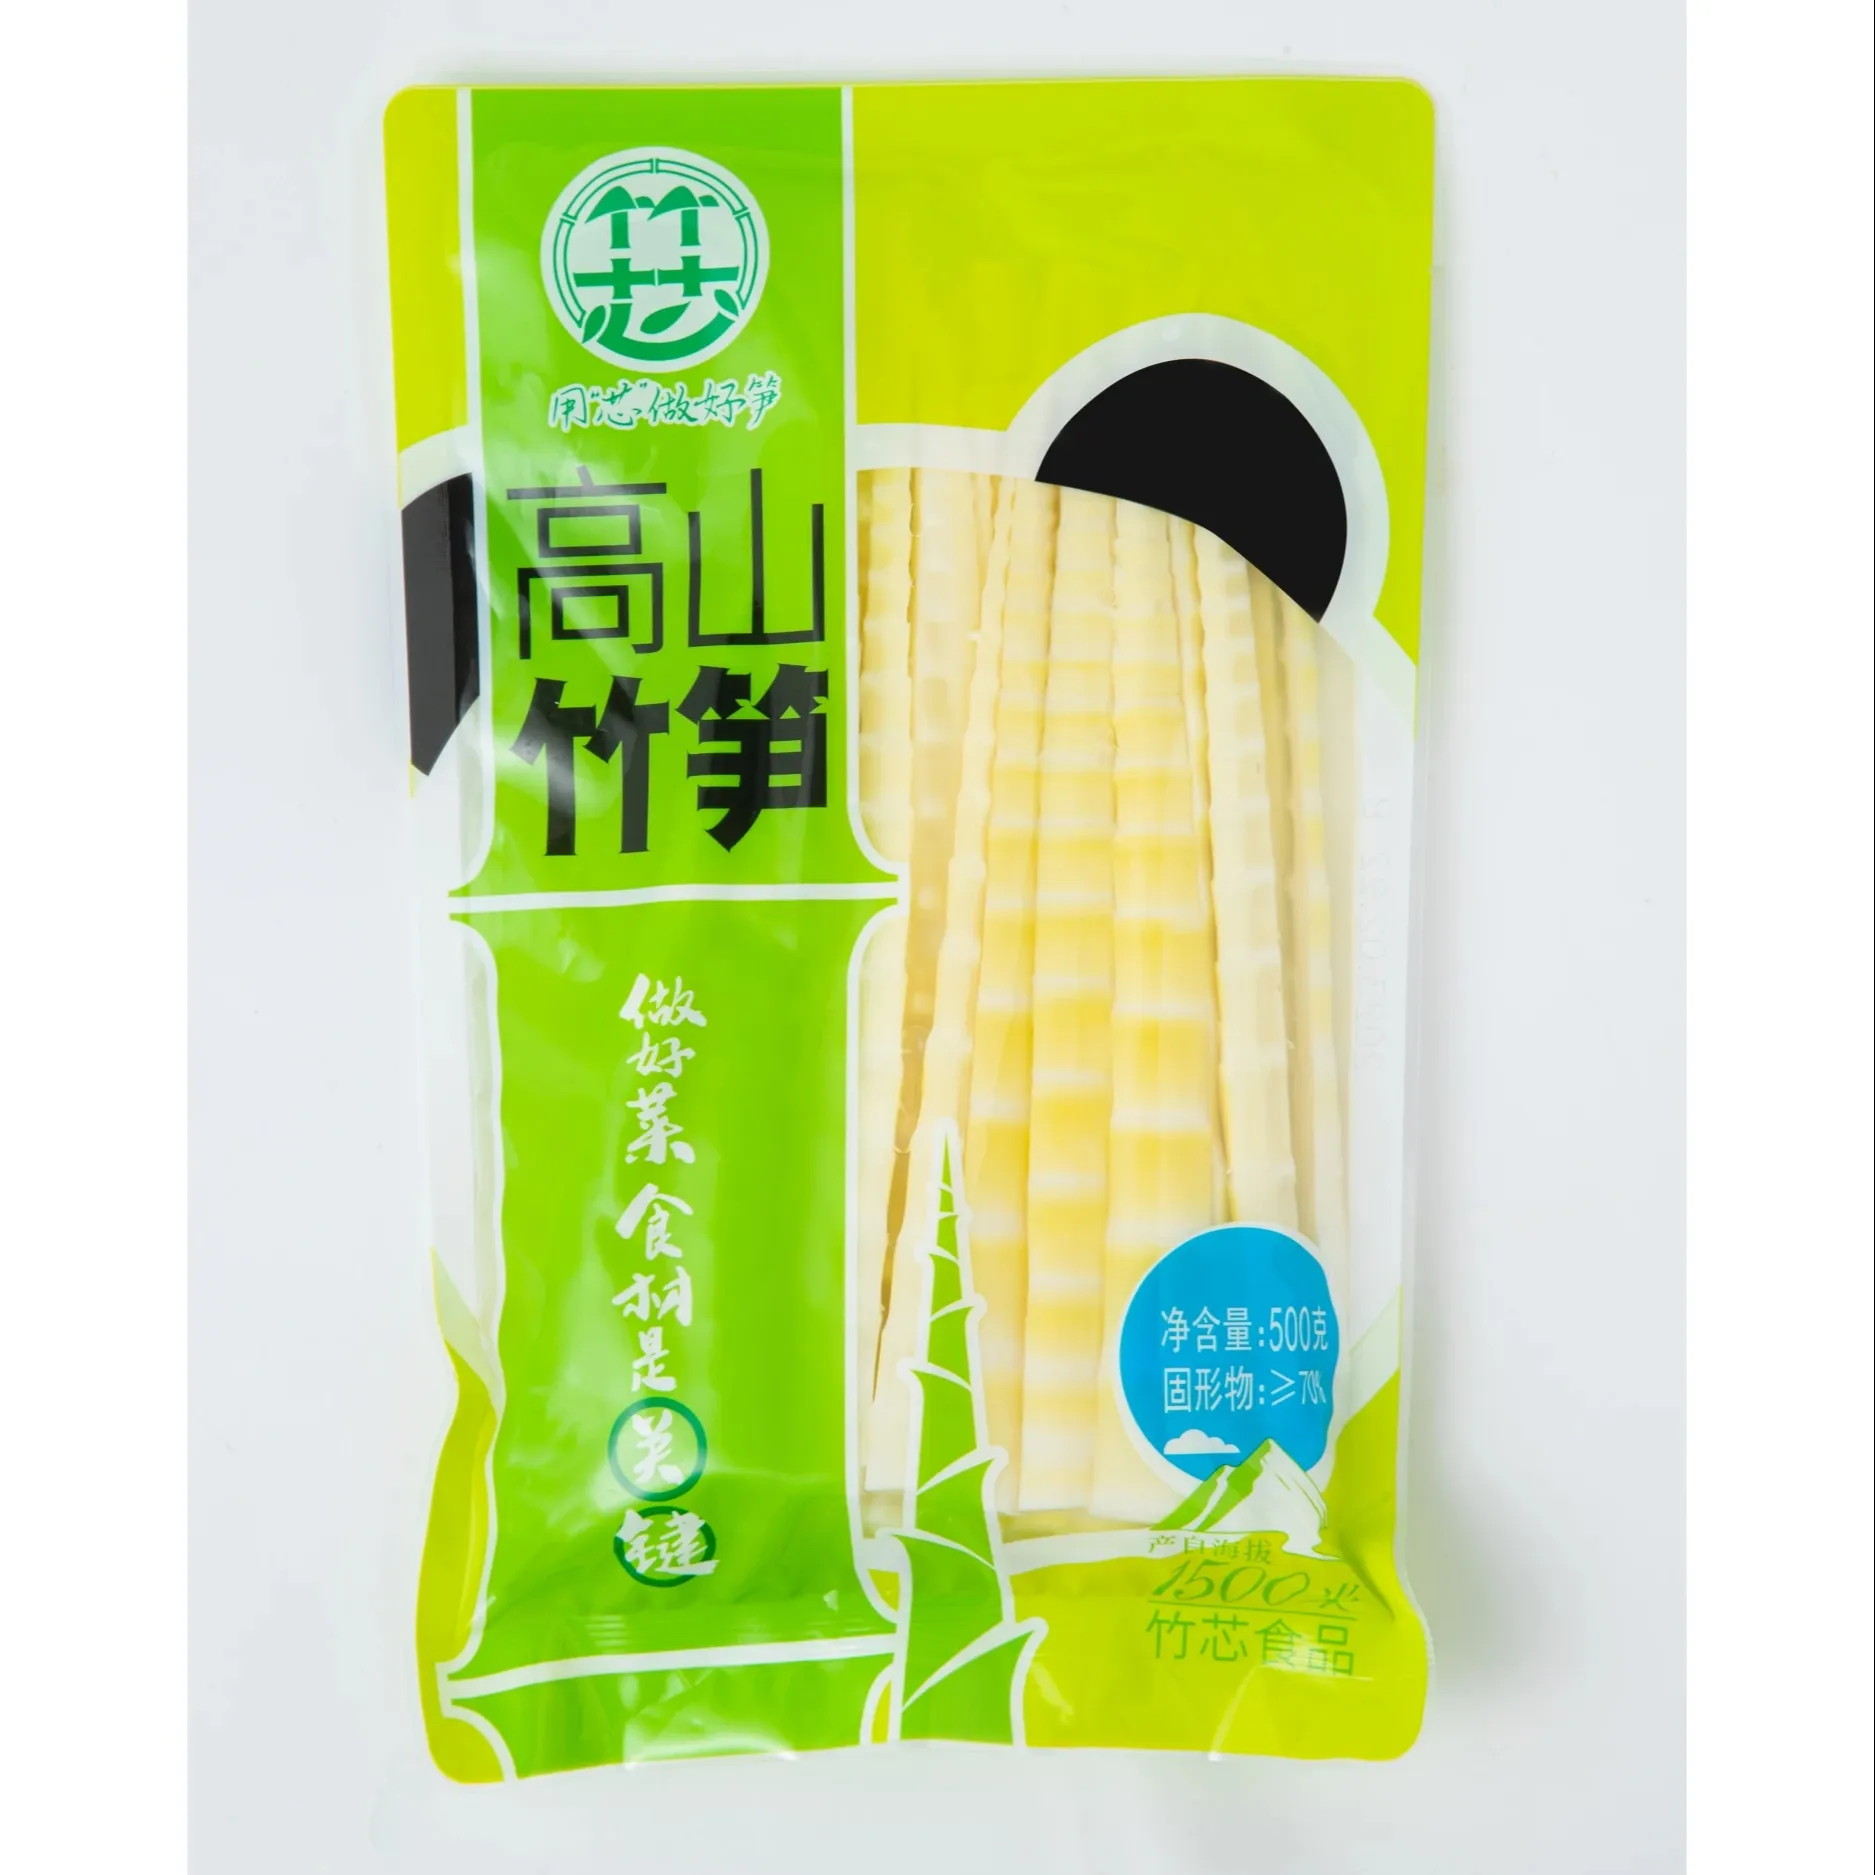 Bande de pousses de bambou tendre Offre Spéciale de 500g avec produit de pousses de bambou de haute qualité